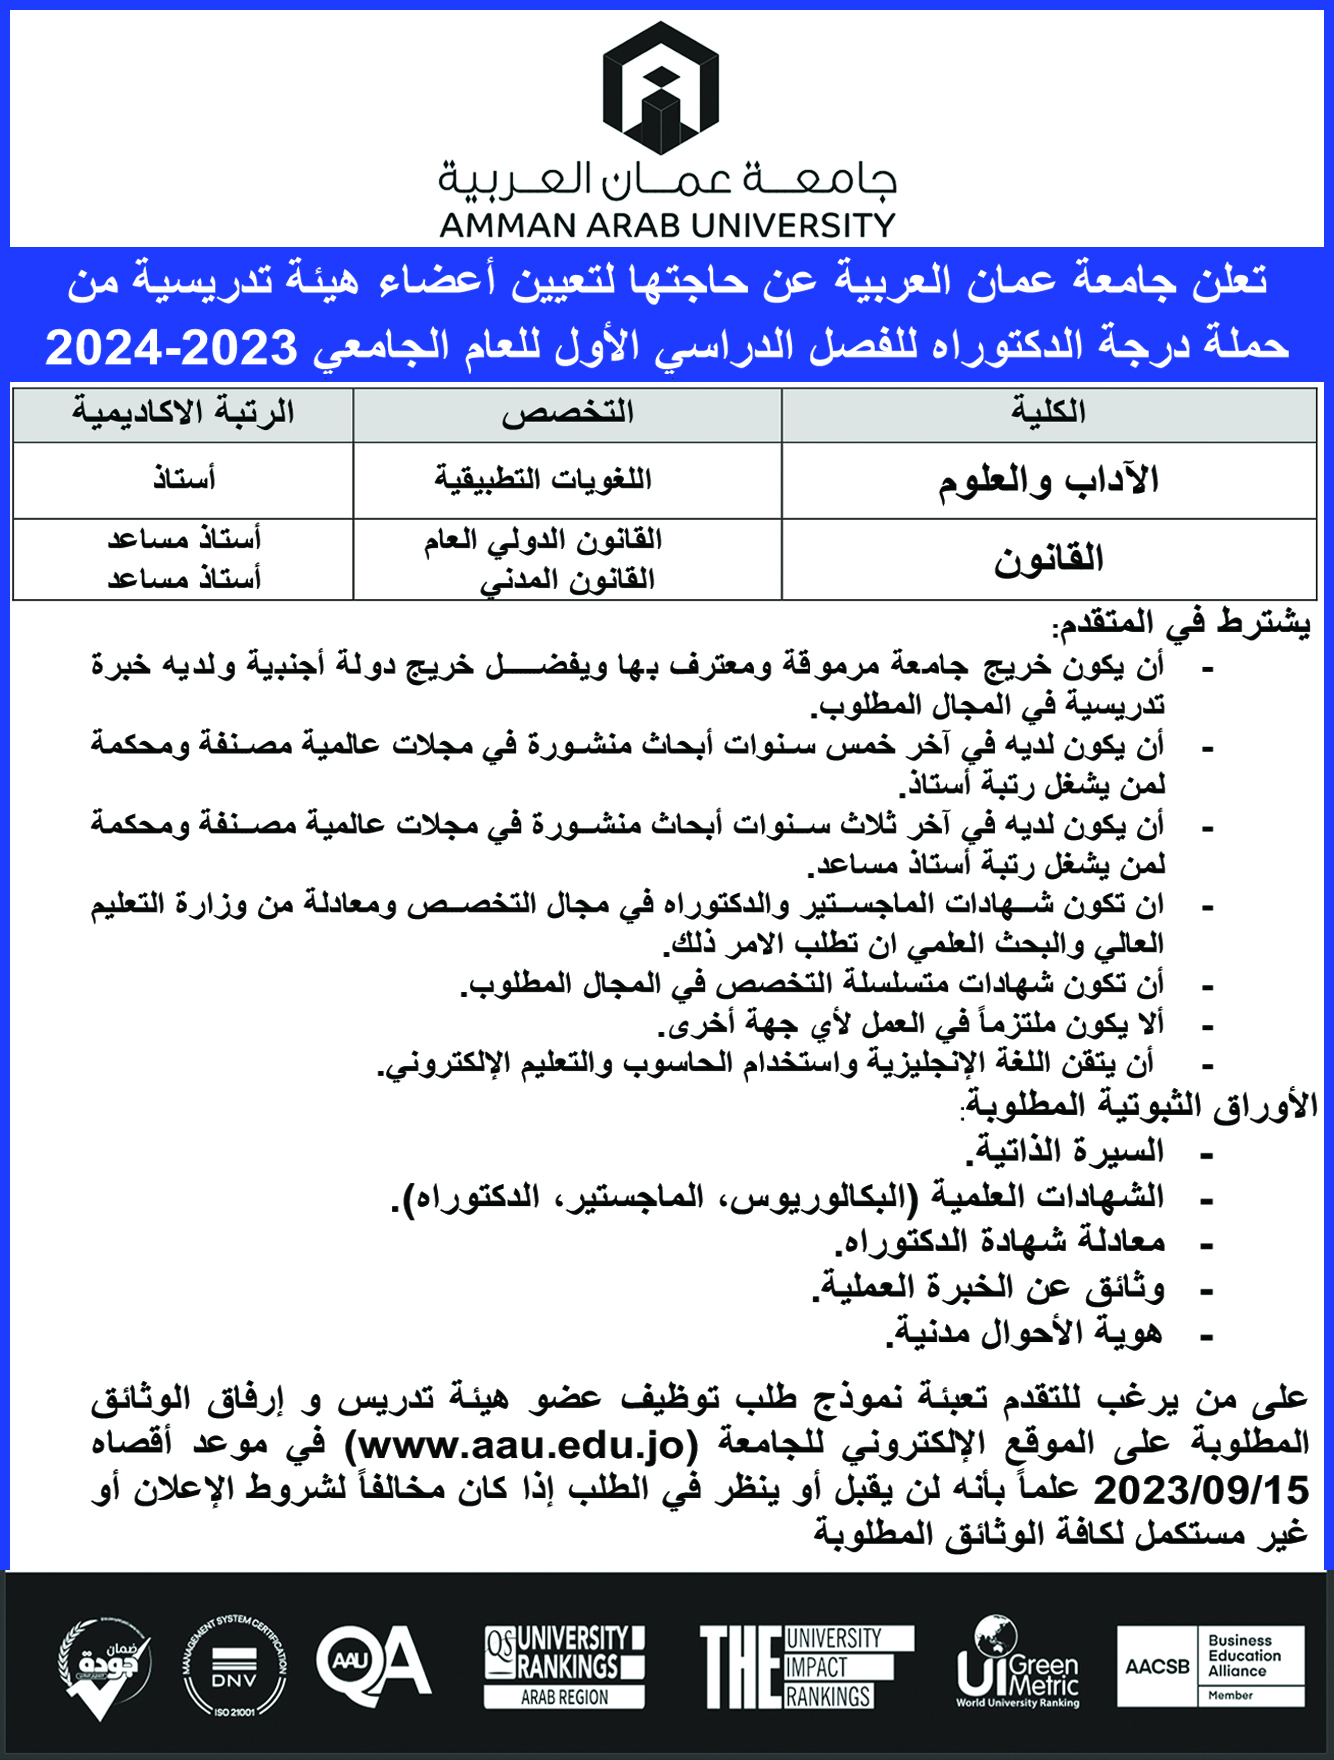 تعلن جامعة عمان العربية عن حاجتها لتعيين اعضاء هيئة تدريسية من حملة درجة الدكتوراة للعام الجامعي 2023-2024